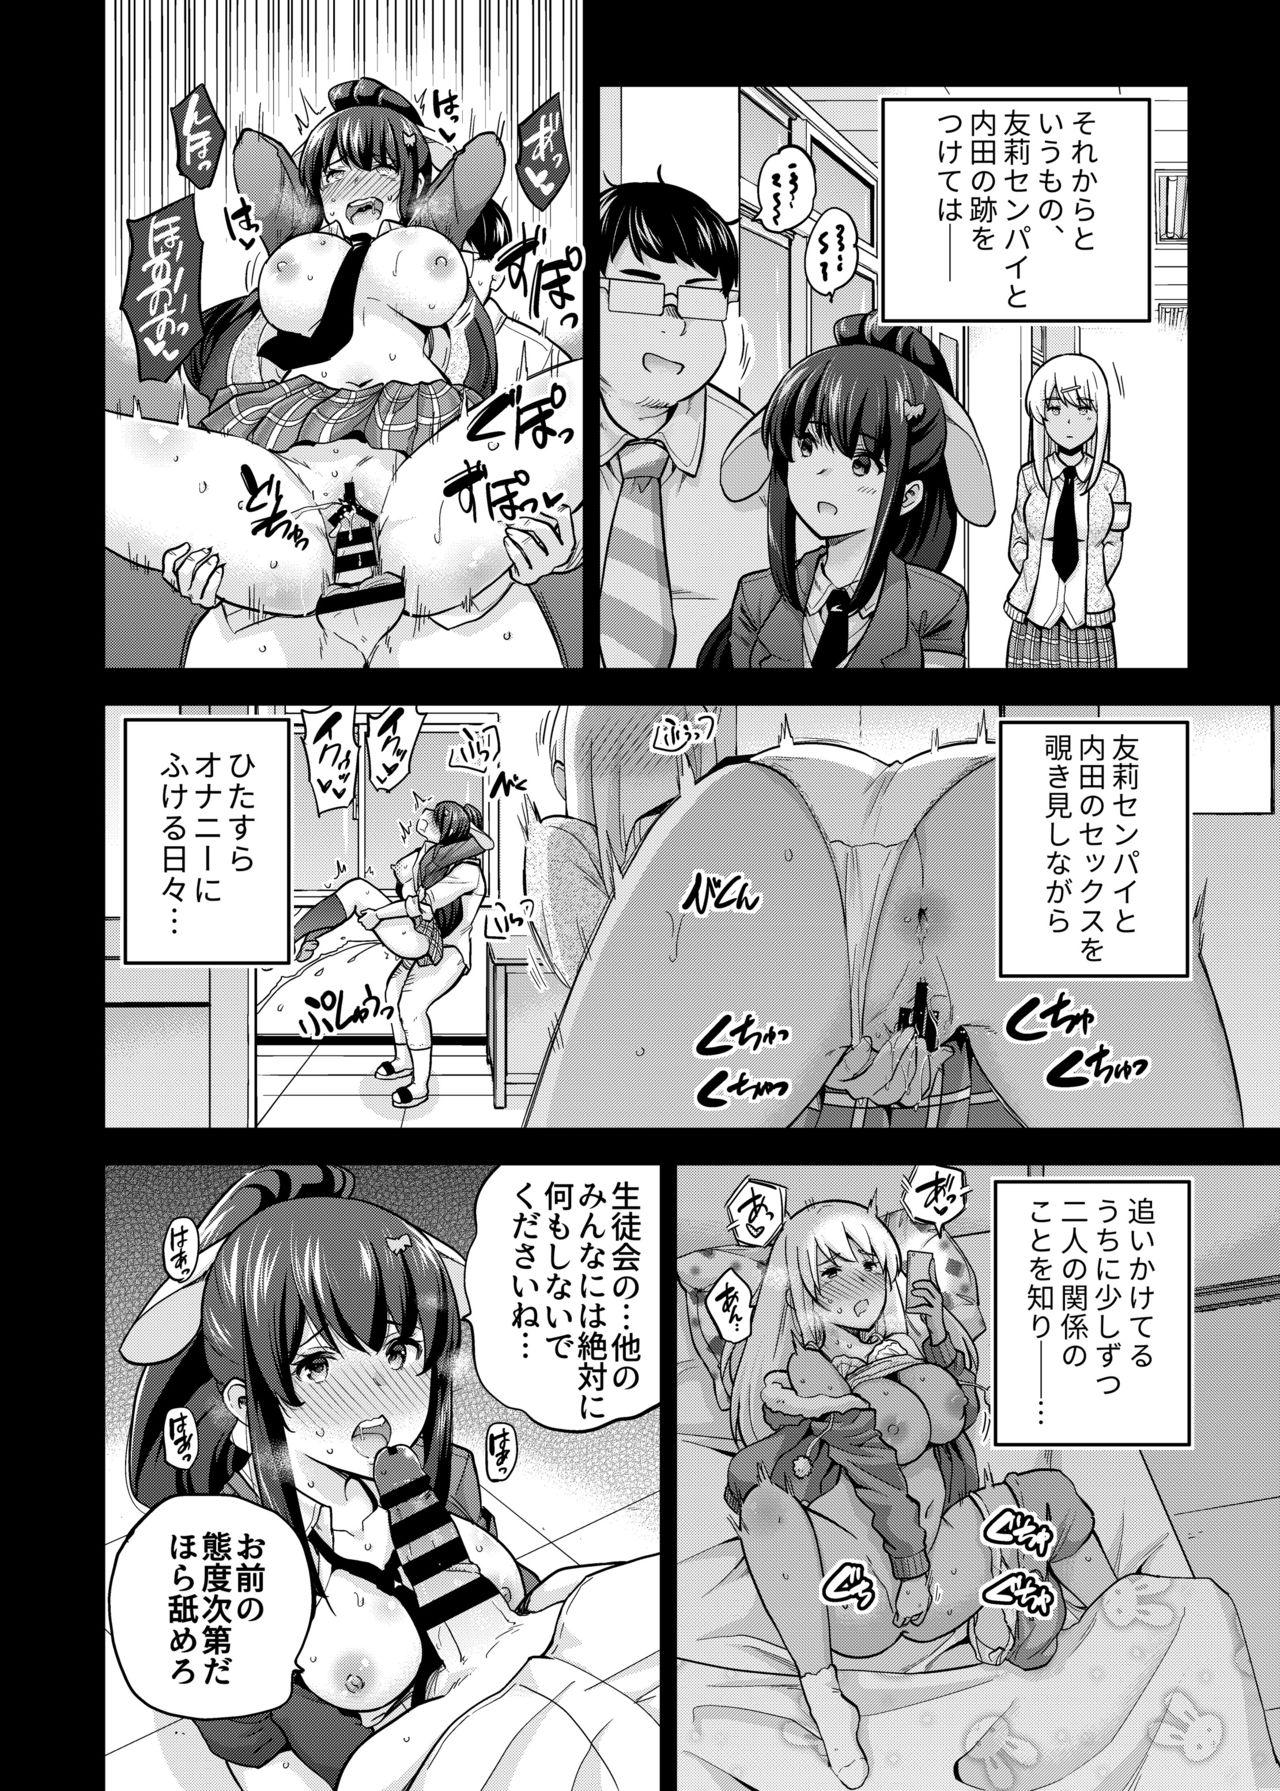 Porra SNS Seitokai Yakuin wo Netotte Share suru Hanashi. 3 - Original Close Up - Page 8